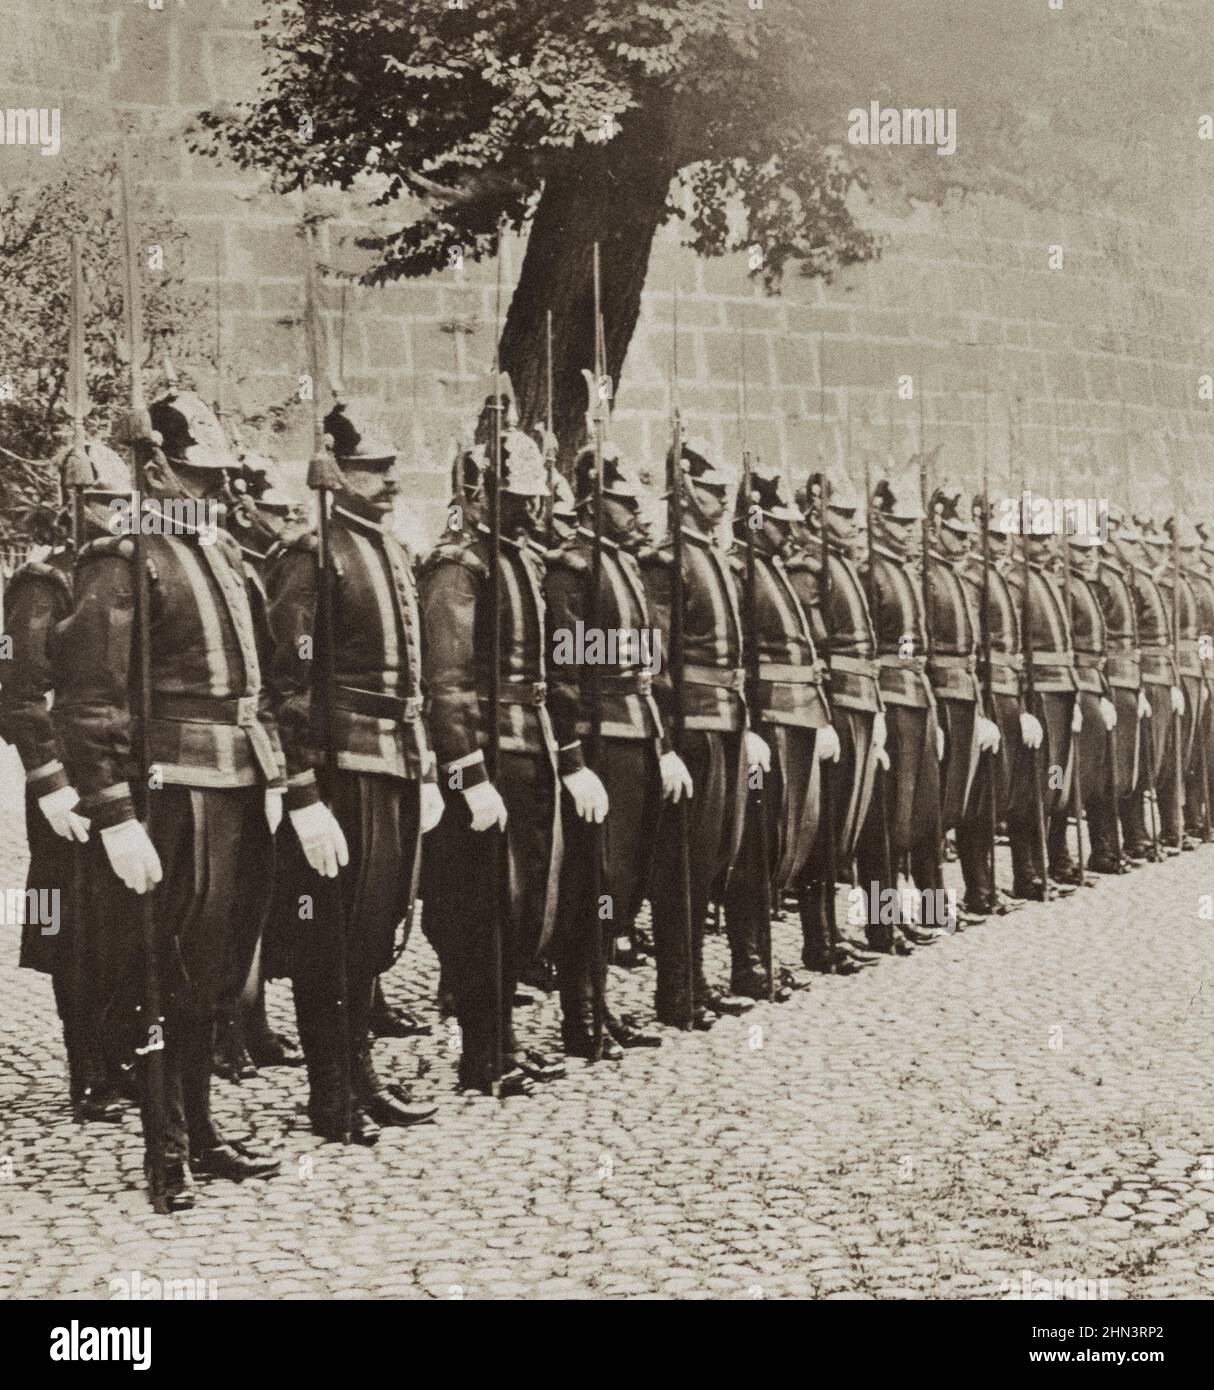 Photo d'époque des fidèles gardes suisses du Pape dans une cour du Vatican historique, Rome. 1903 Banque D'Images